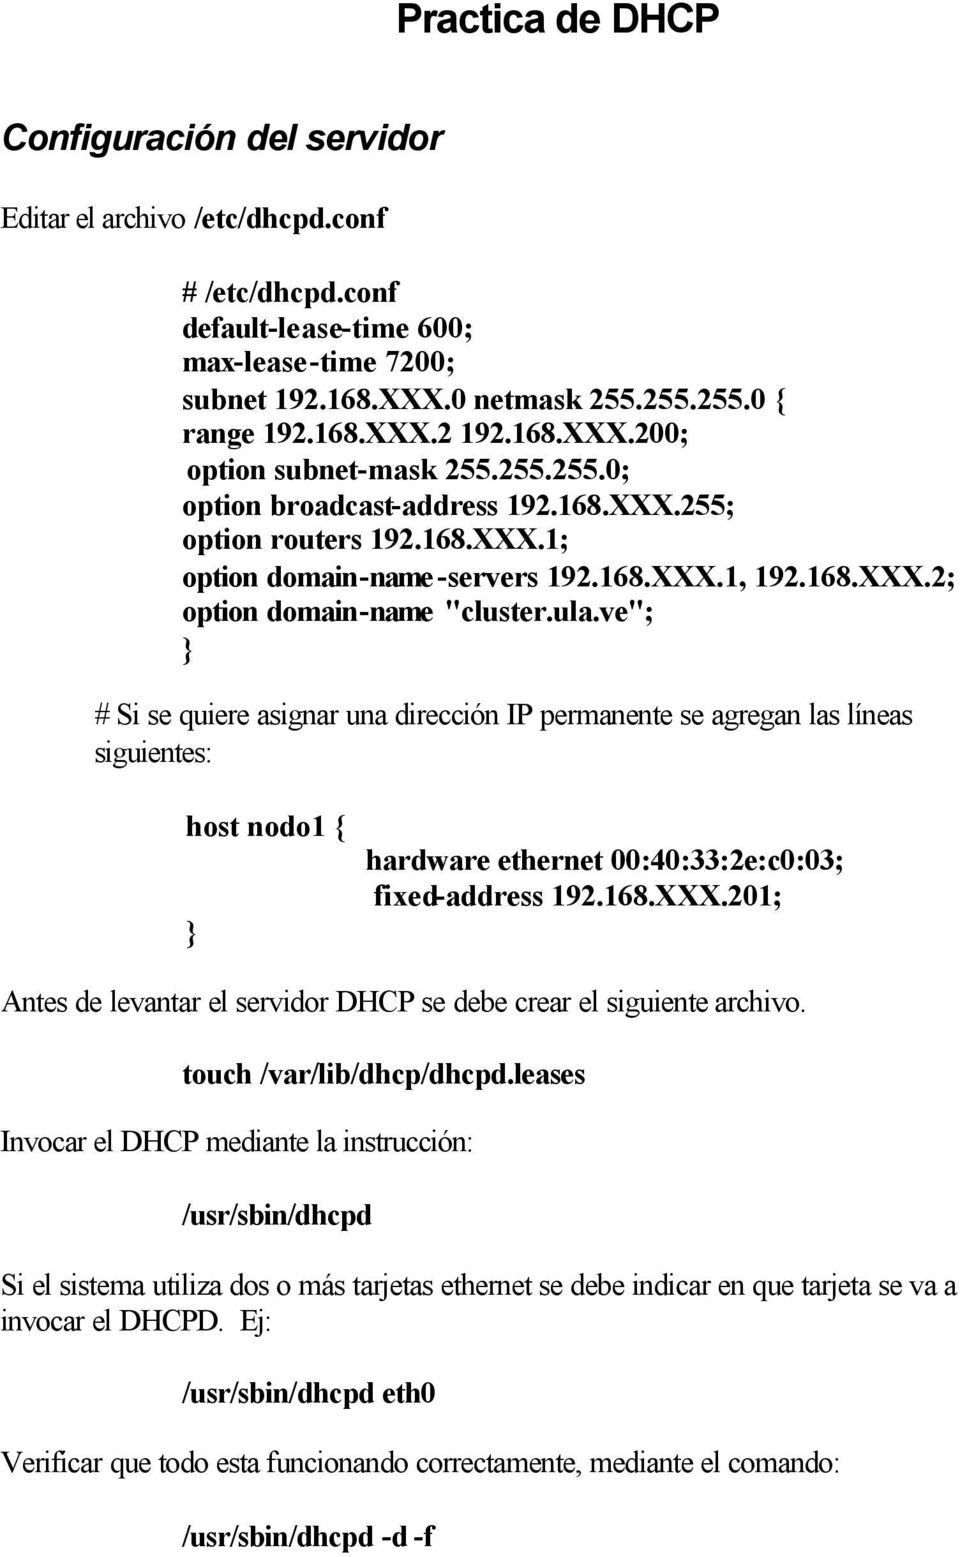 ula.ve"; } # Si se quiere asignar una dirección IP permanente se agregan las líneas siguientes: host nodo1 { } hardware ethernet 00:40:33:2e:c0:03; fixed-address 192.168.XXX.